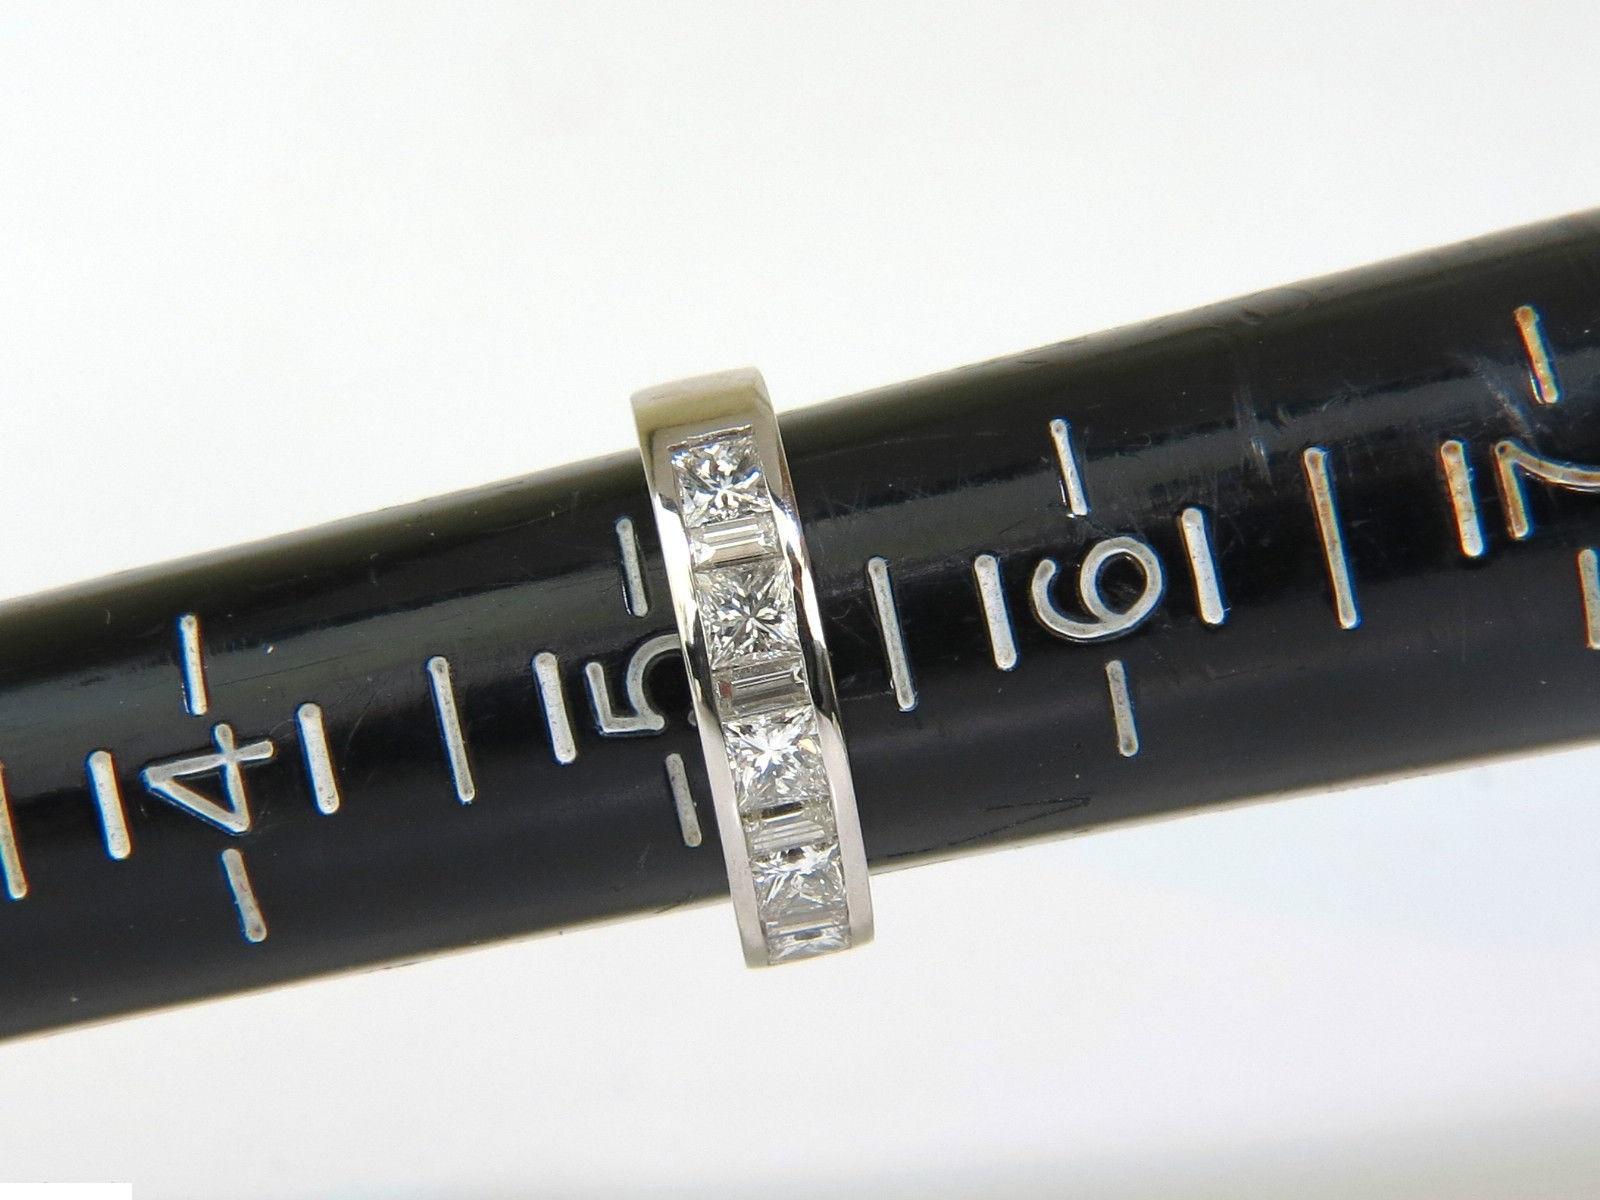 Baguettes und Prinzessinnenband



1.50ct. Natürliche Diamanten 

Vollschliff & Facettierter Brillant

H-Farbe, Vs-1 Klarheit

Platin

7.5 Gramm



aktuelle Ringgröße: 

5.25

& 

größenänderung möglich, bitte anfragen 

Der Ring ist 4,5 mm